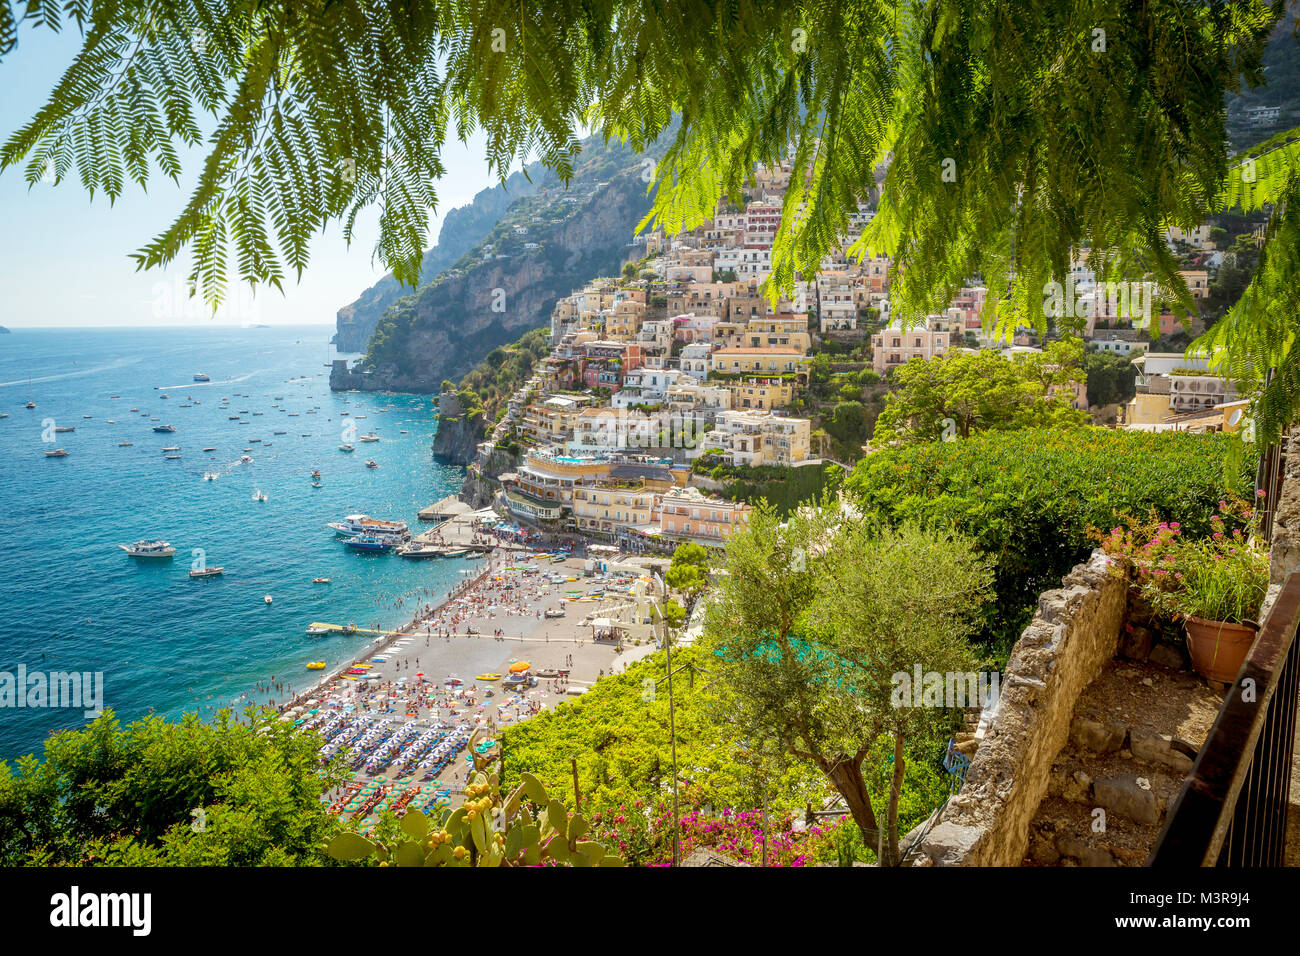 Vista panoramica di Positano, città della Costa d'Amalfi, Campania, Italia Foto Stock